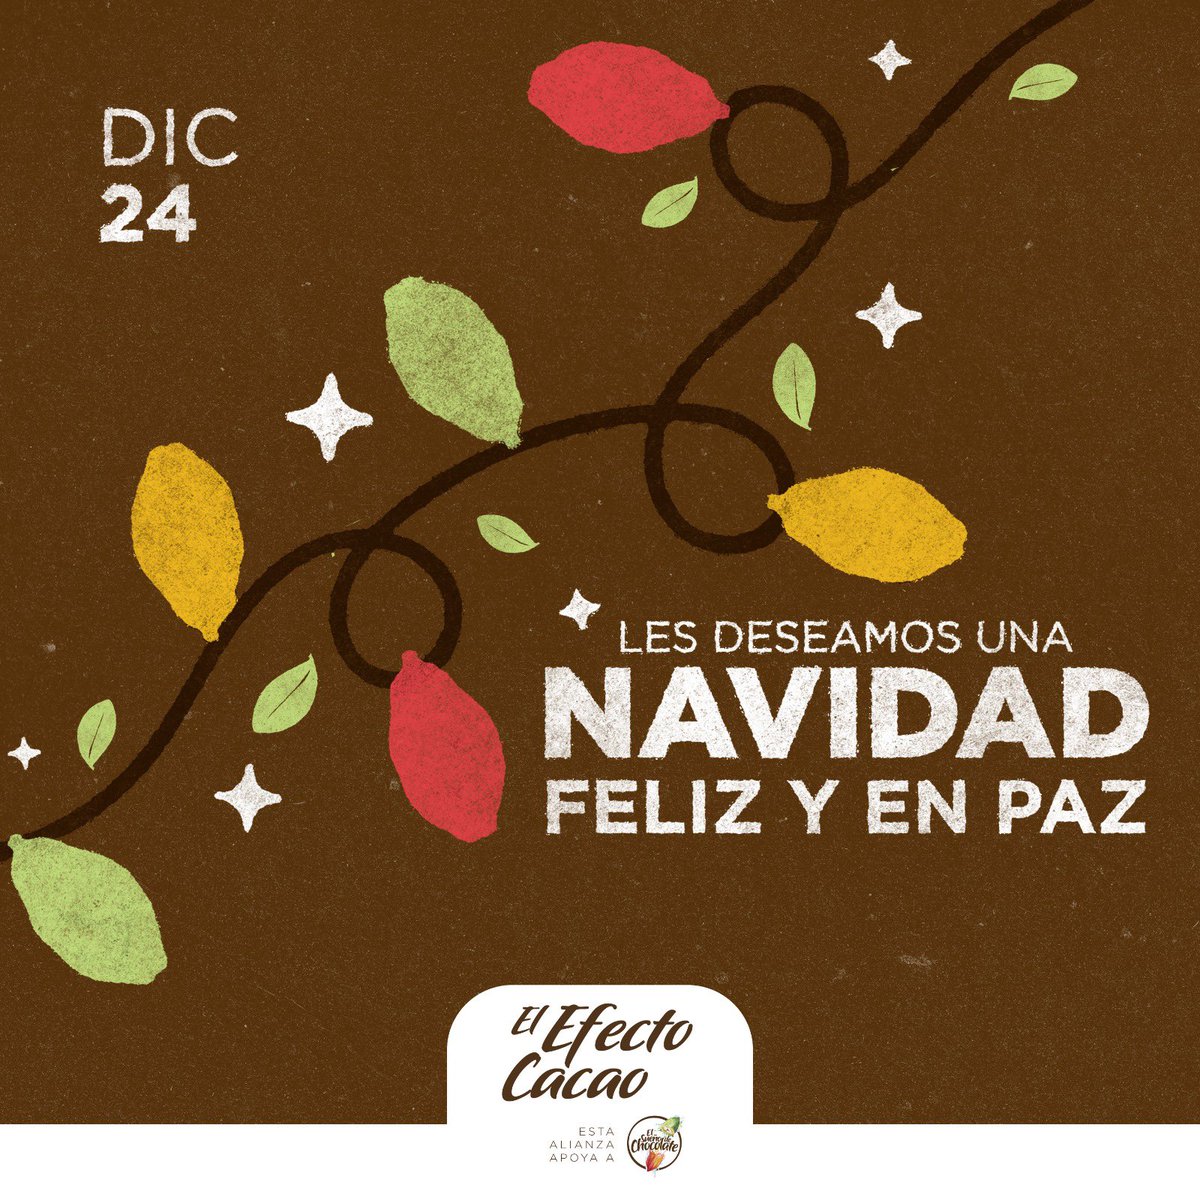 El Efecto Cacao les desea una Feliz Navidad. 🎄 Gracias por su confianza, por su lealtad y por el impacto transformador que juntos hemos logrado en el campo colombiano. ¡Sigamos sembrando sueños y cultivado esperanzas!❤️🍫 #FelizNavidad